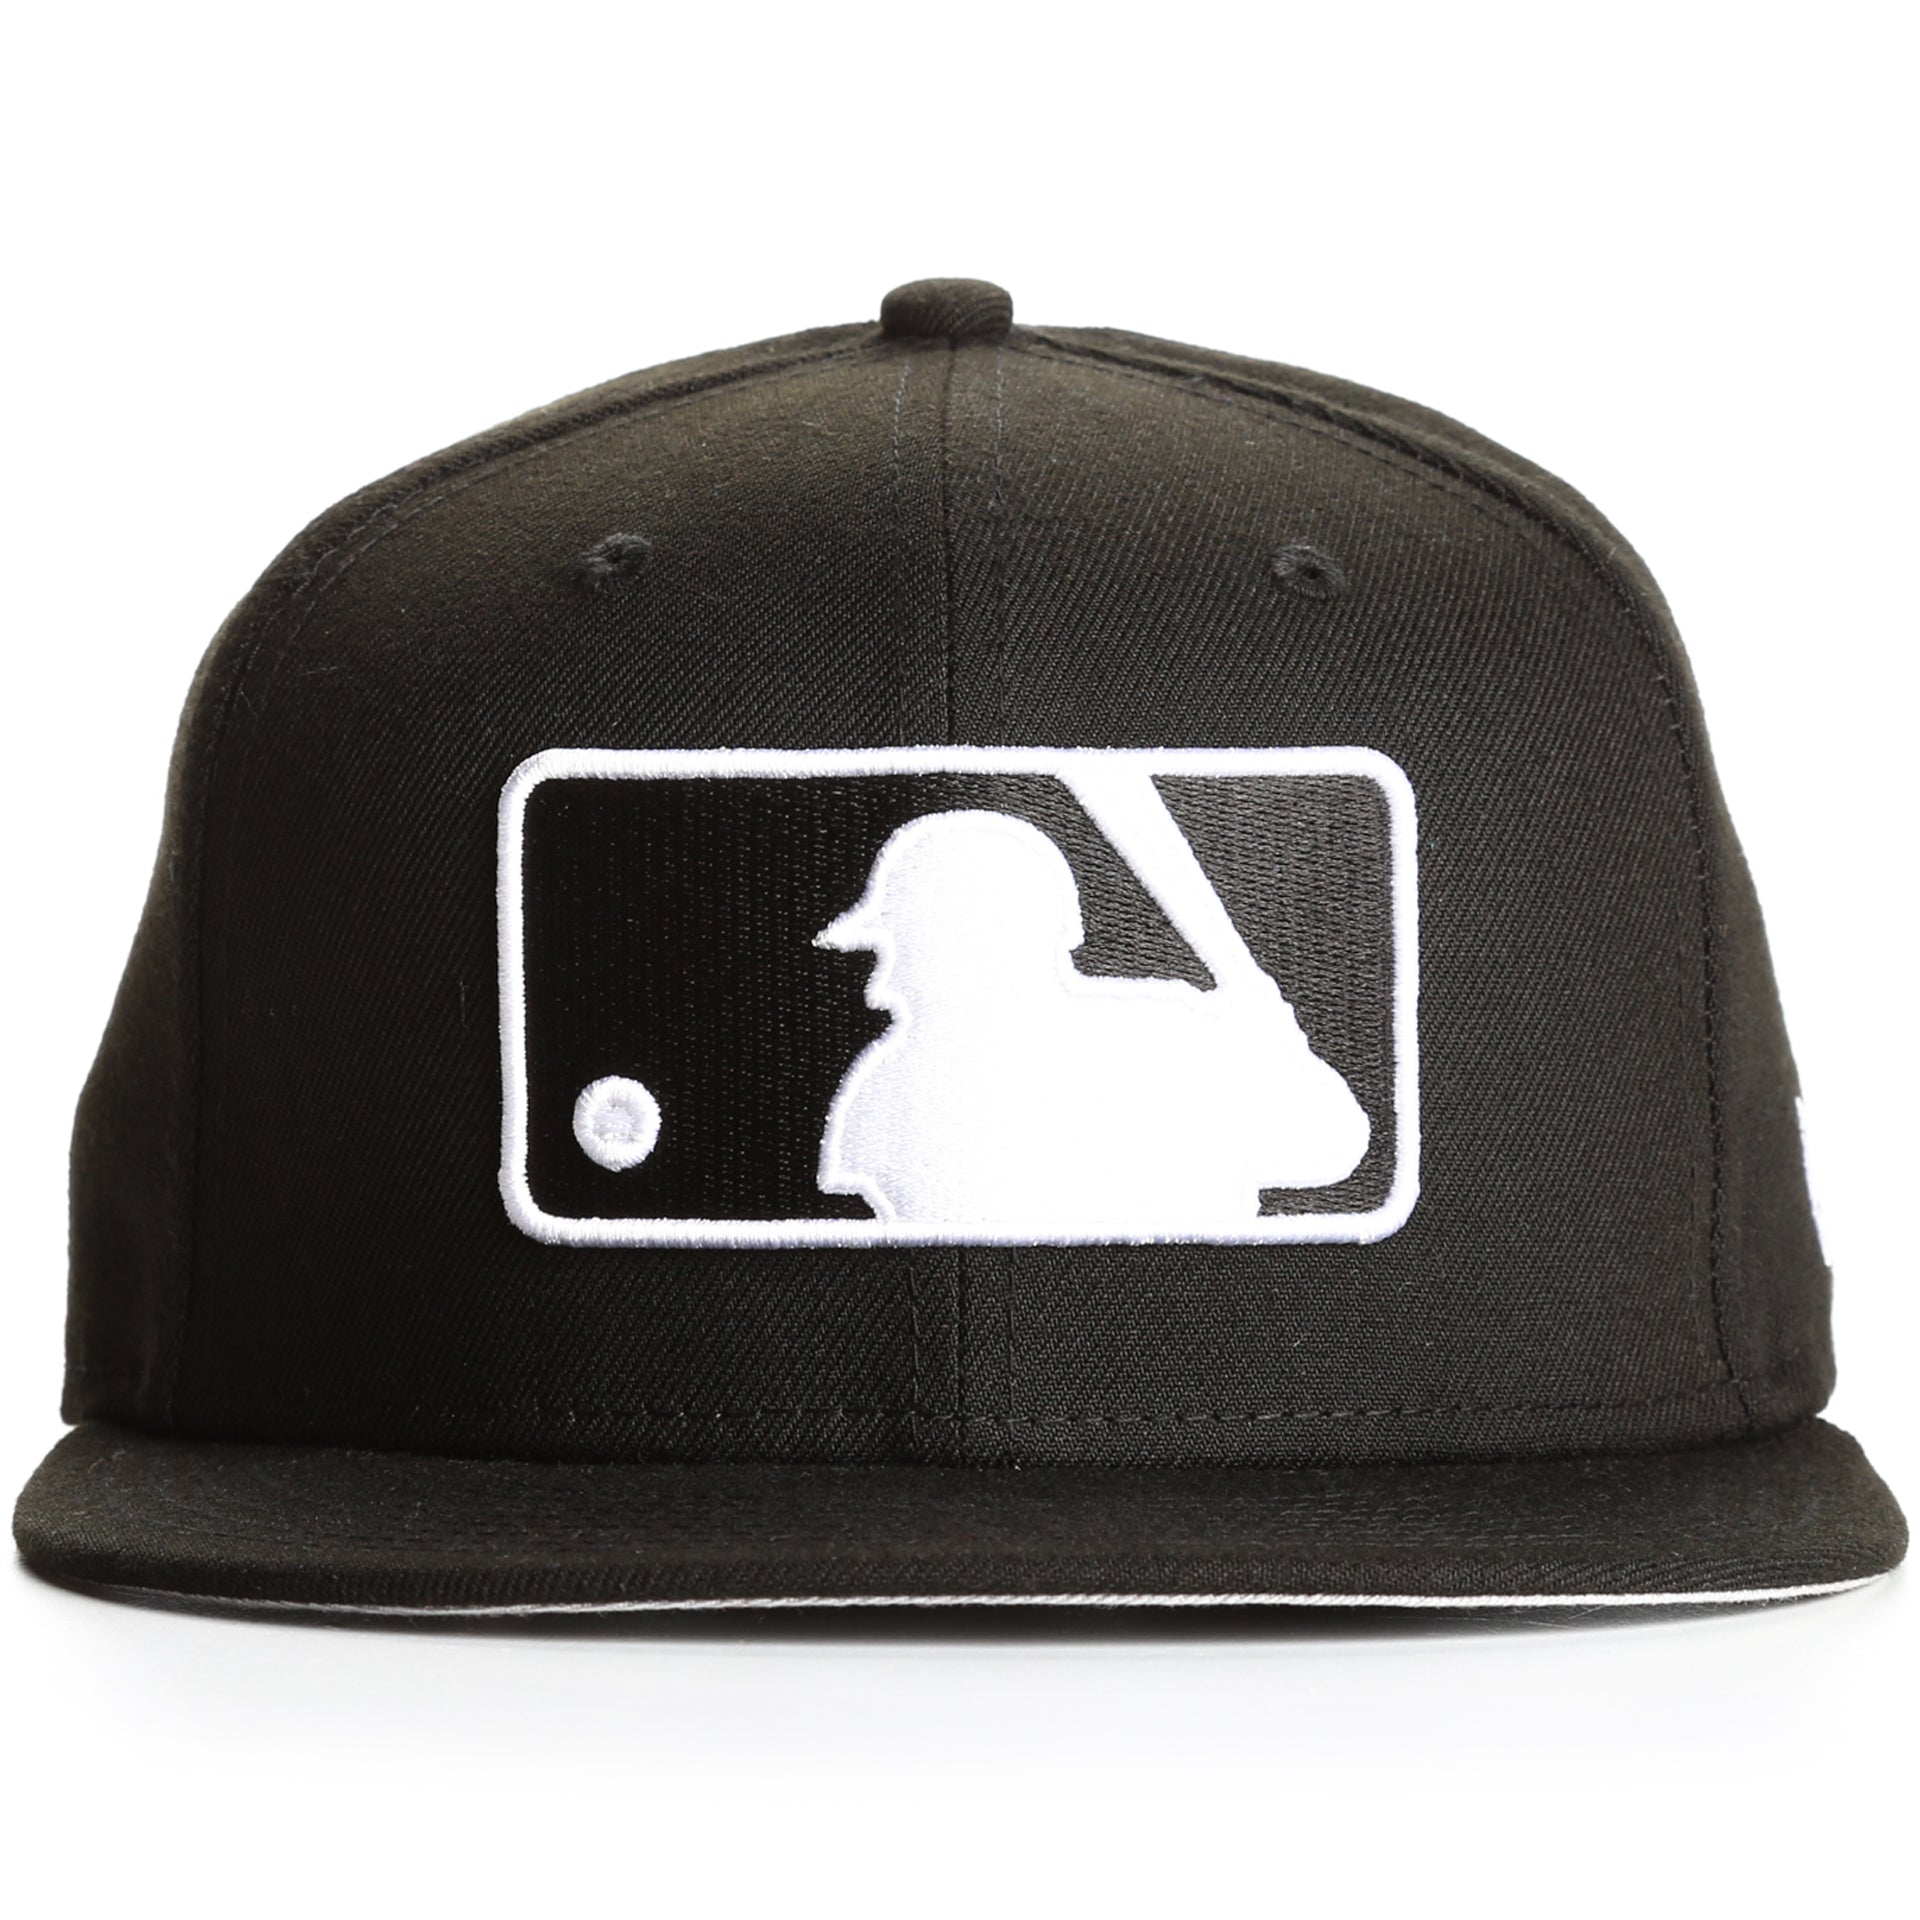 New Era 9Fifty MLB Logo Basic Snapback - Black/White - New Star